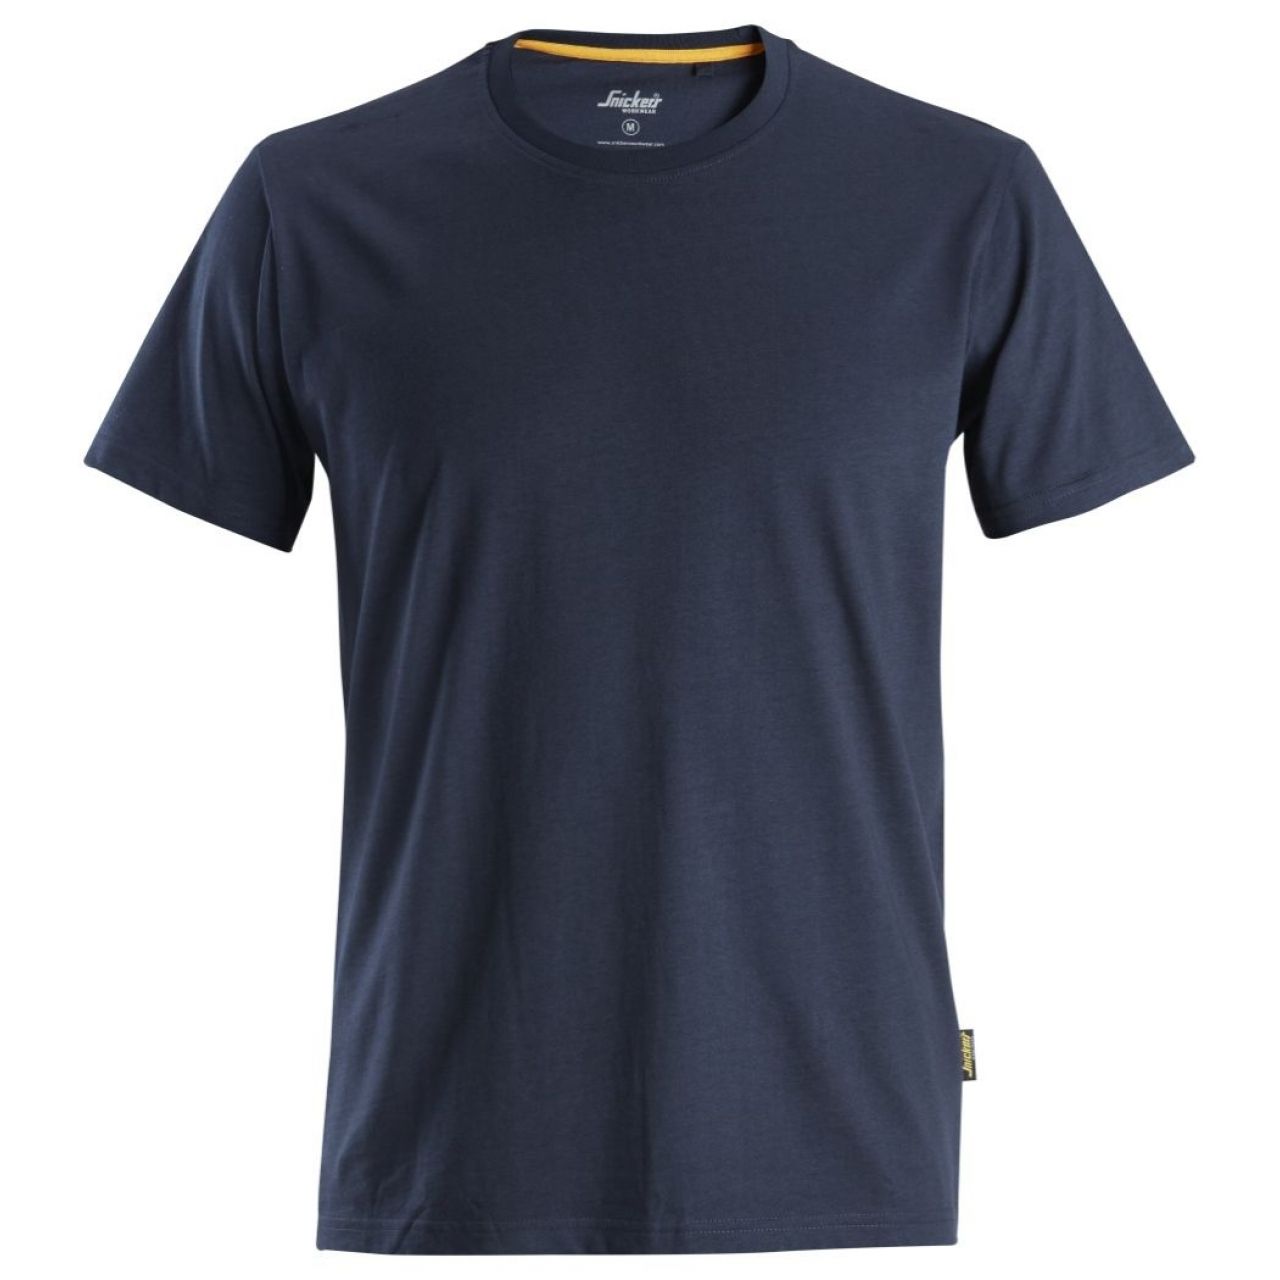 Camiseta de algodón orgánico AllroundWork Azul marino talla XL